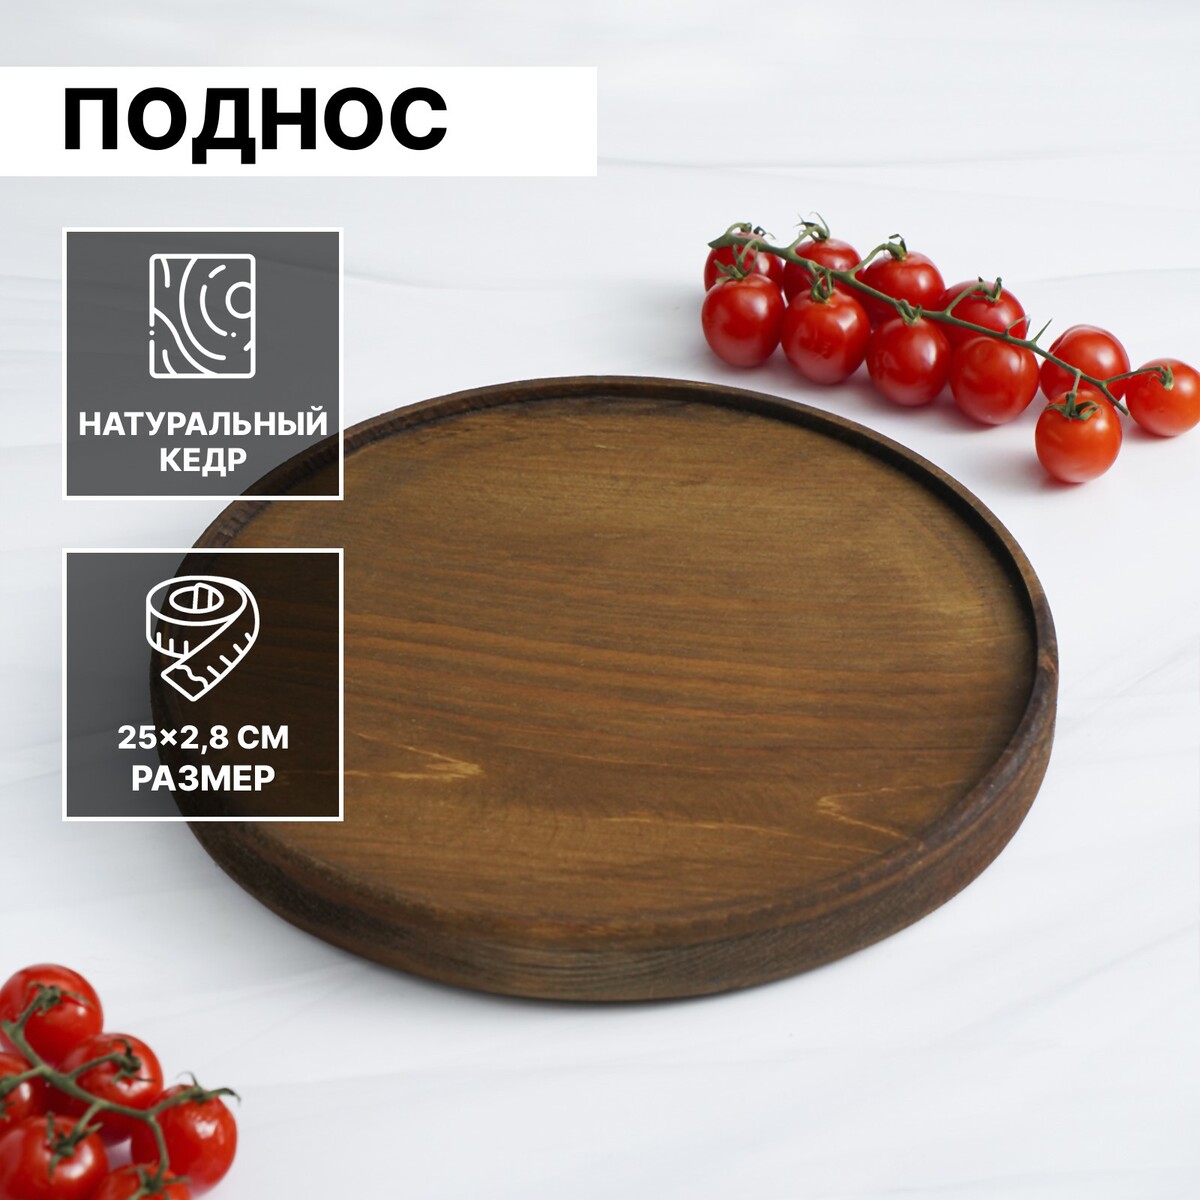 Поднос из натурального кедра mаgistrо, 25×2,8 см, цвет шоколадный тарелка деревянная mаgistrо 21 см из цельного массива кедра